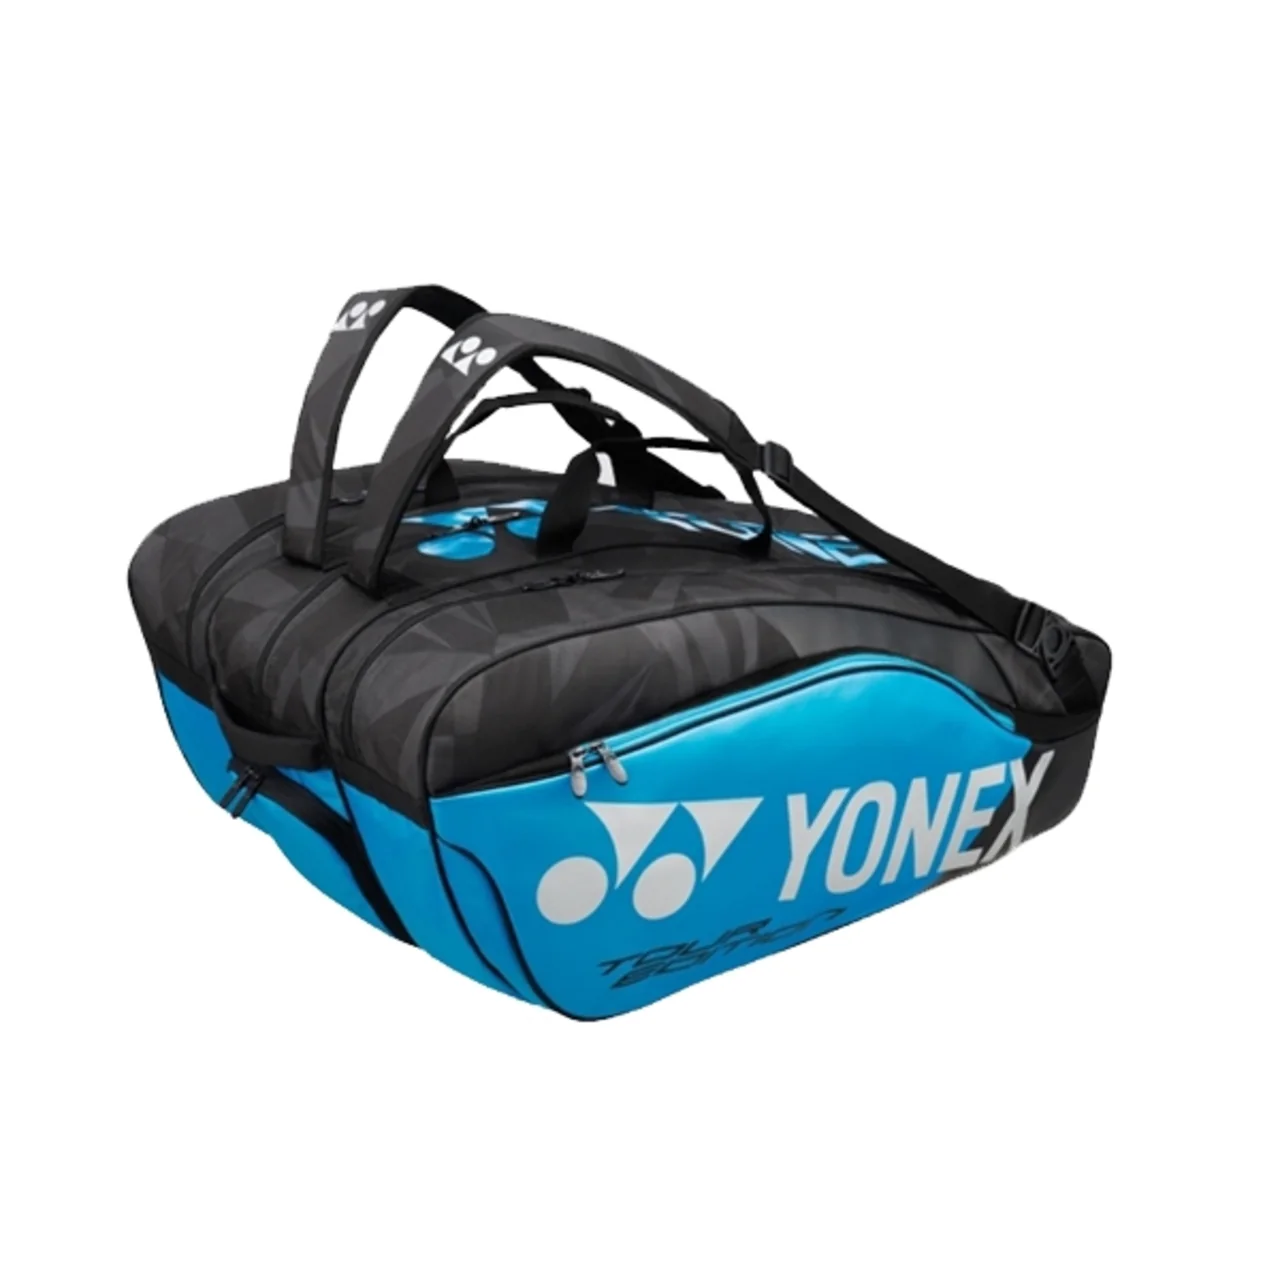 Yonex Pro Bag x12 Infinity Blue 2019